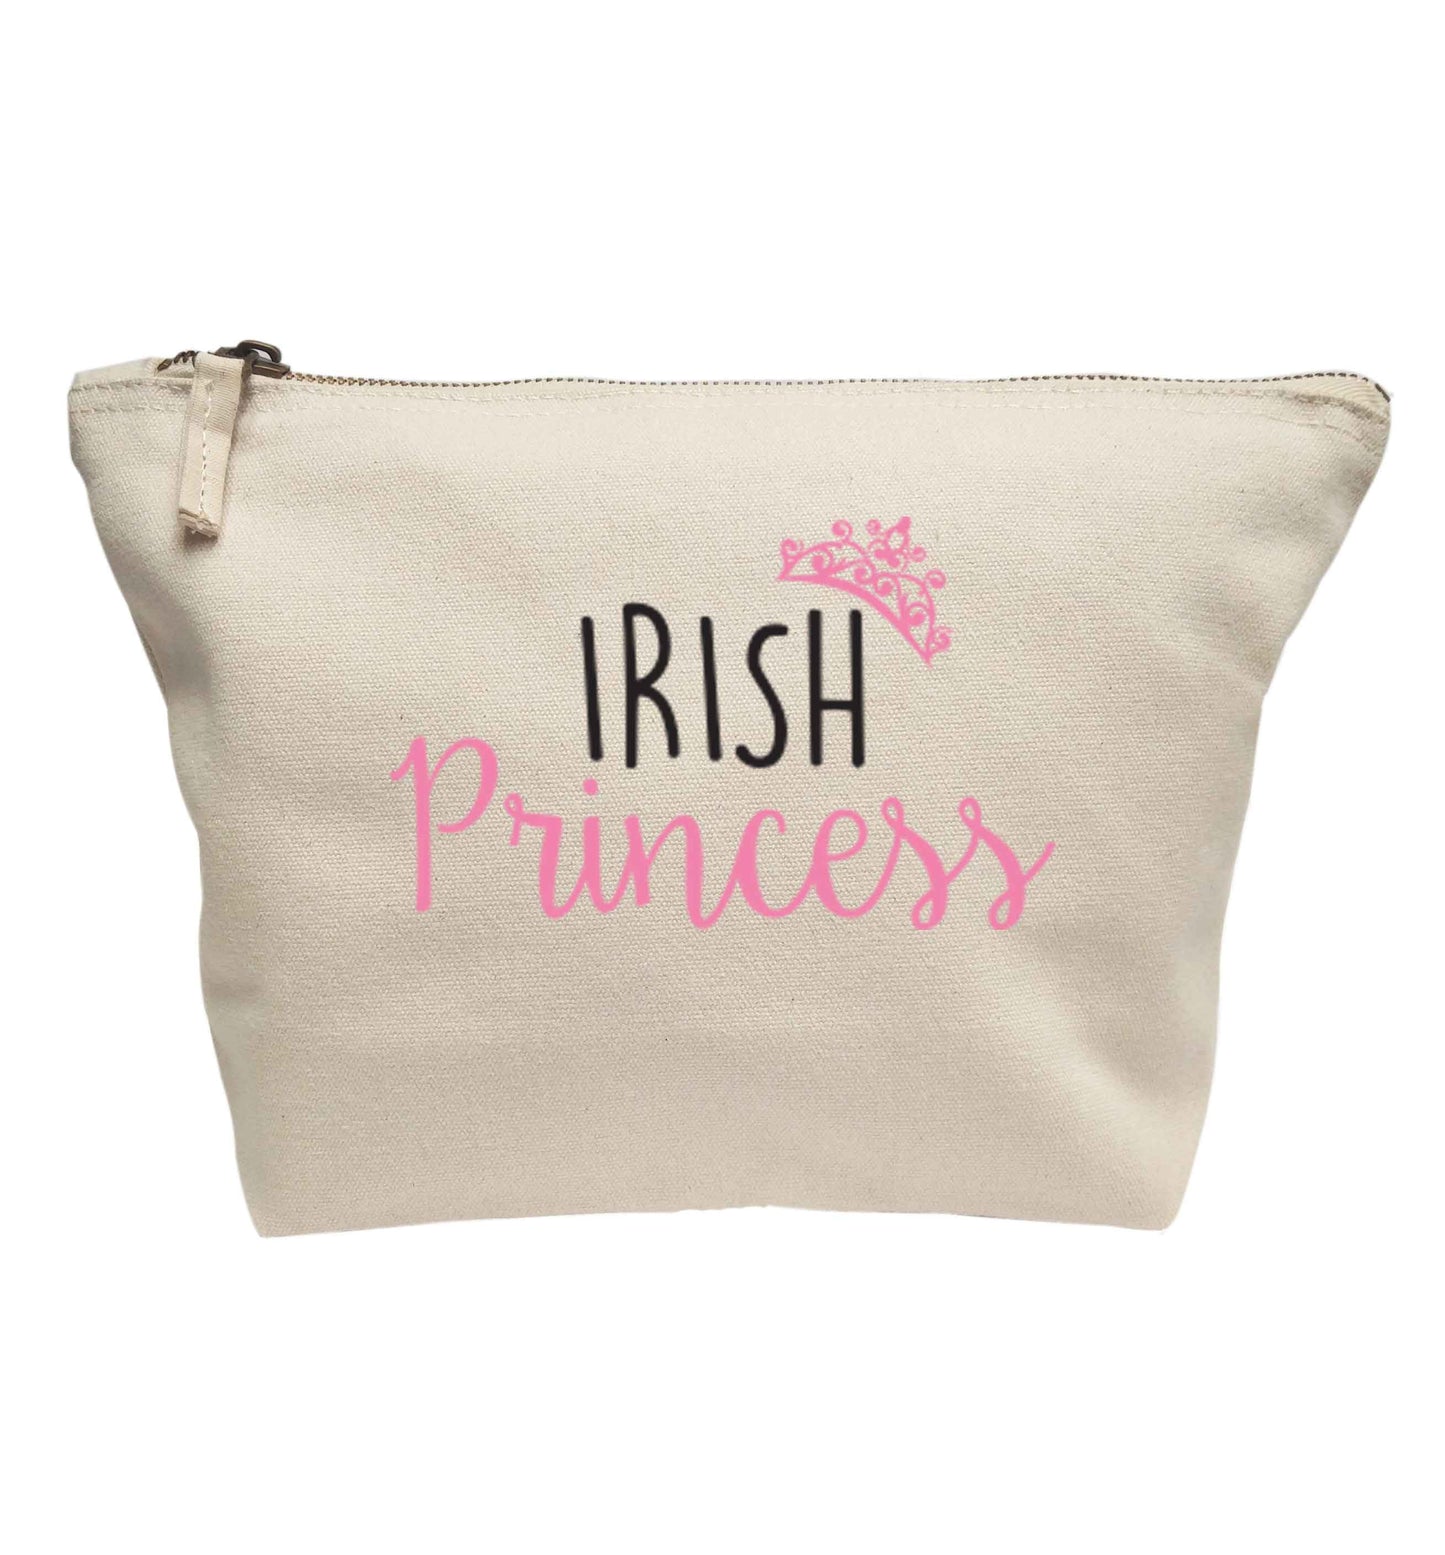 Irish princess | Makeup / wash bag